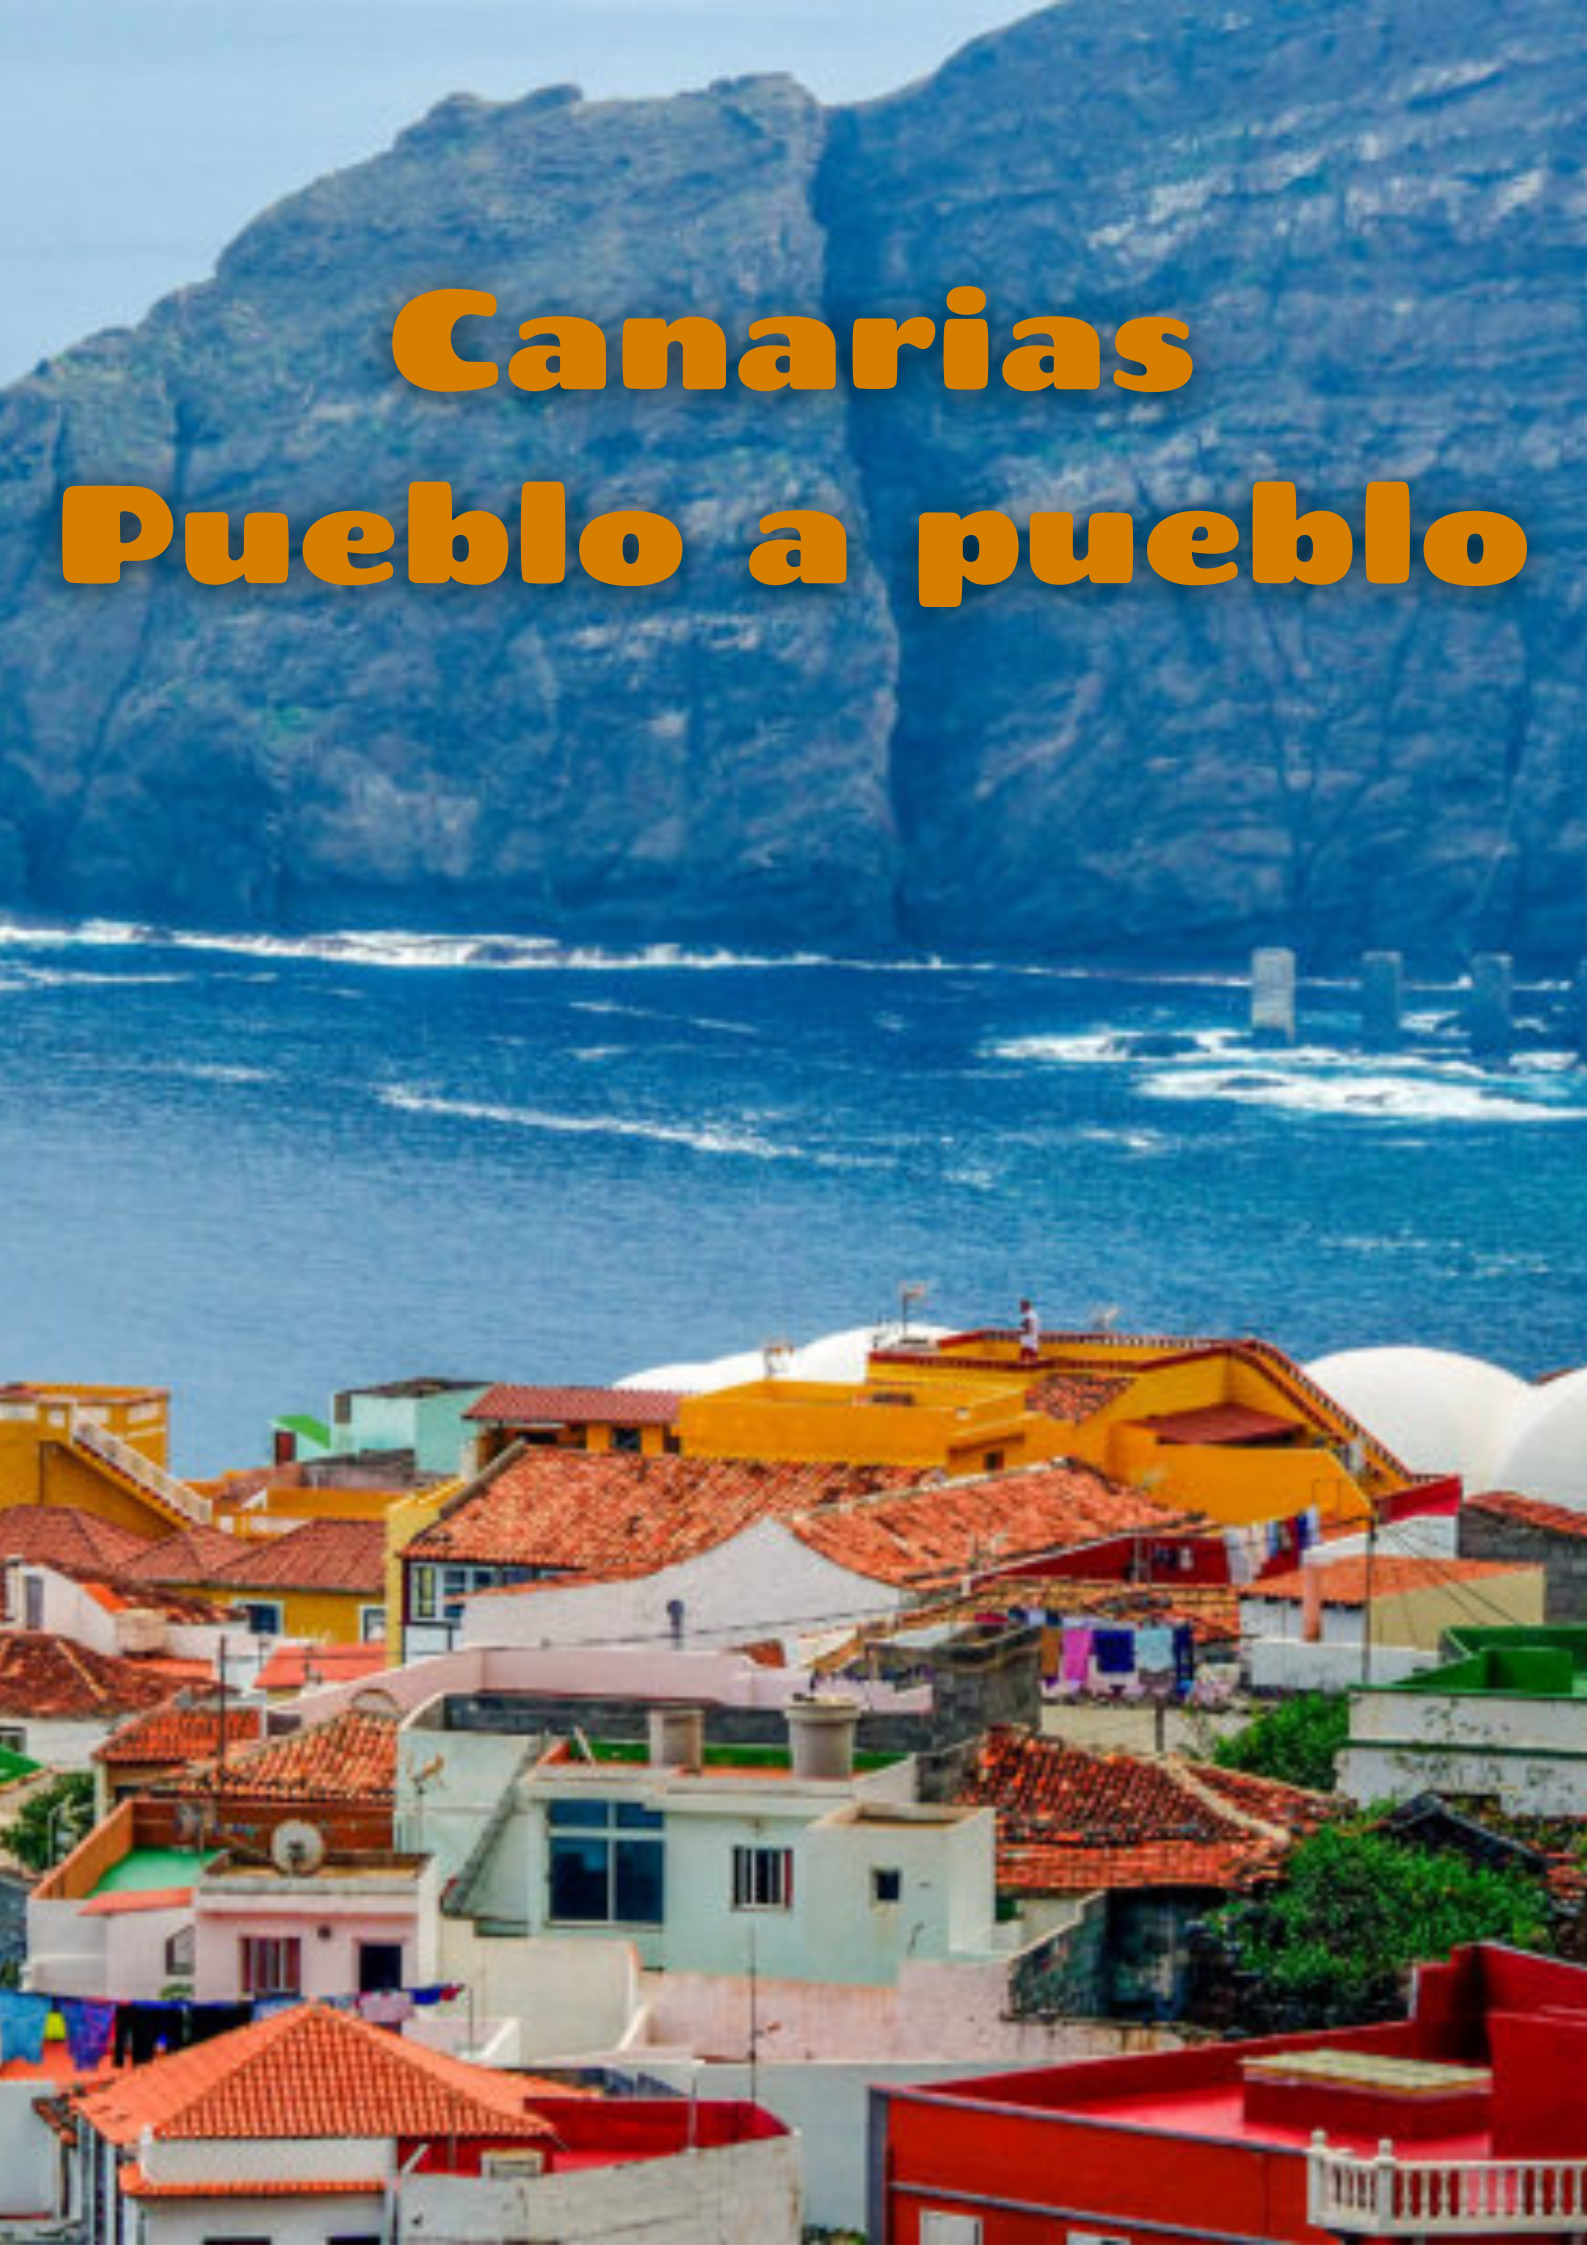 Caratula de Canarias pueblo a pueblo (Canarias pueblo a pueblo) 